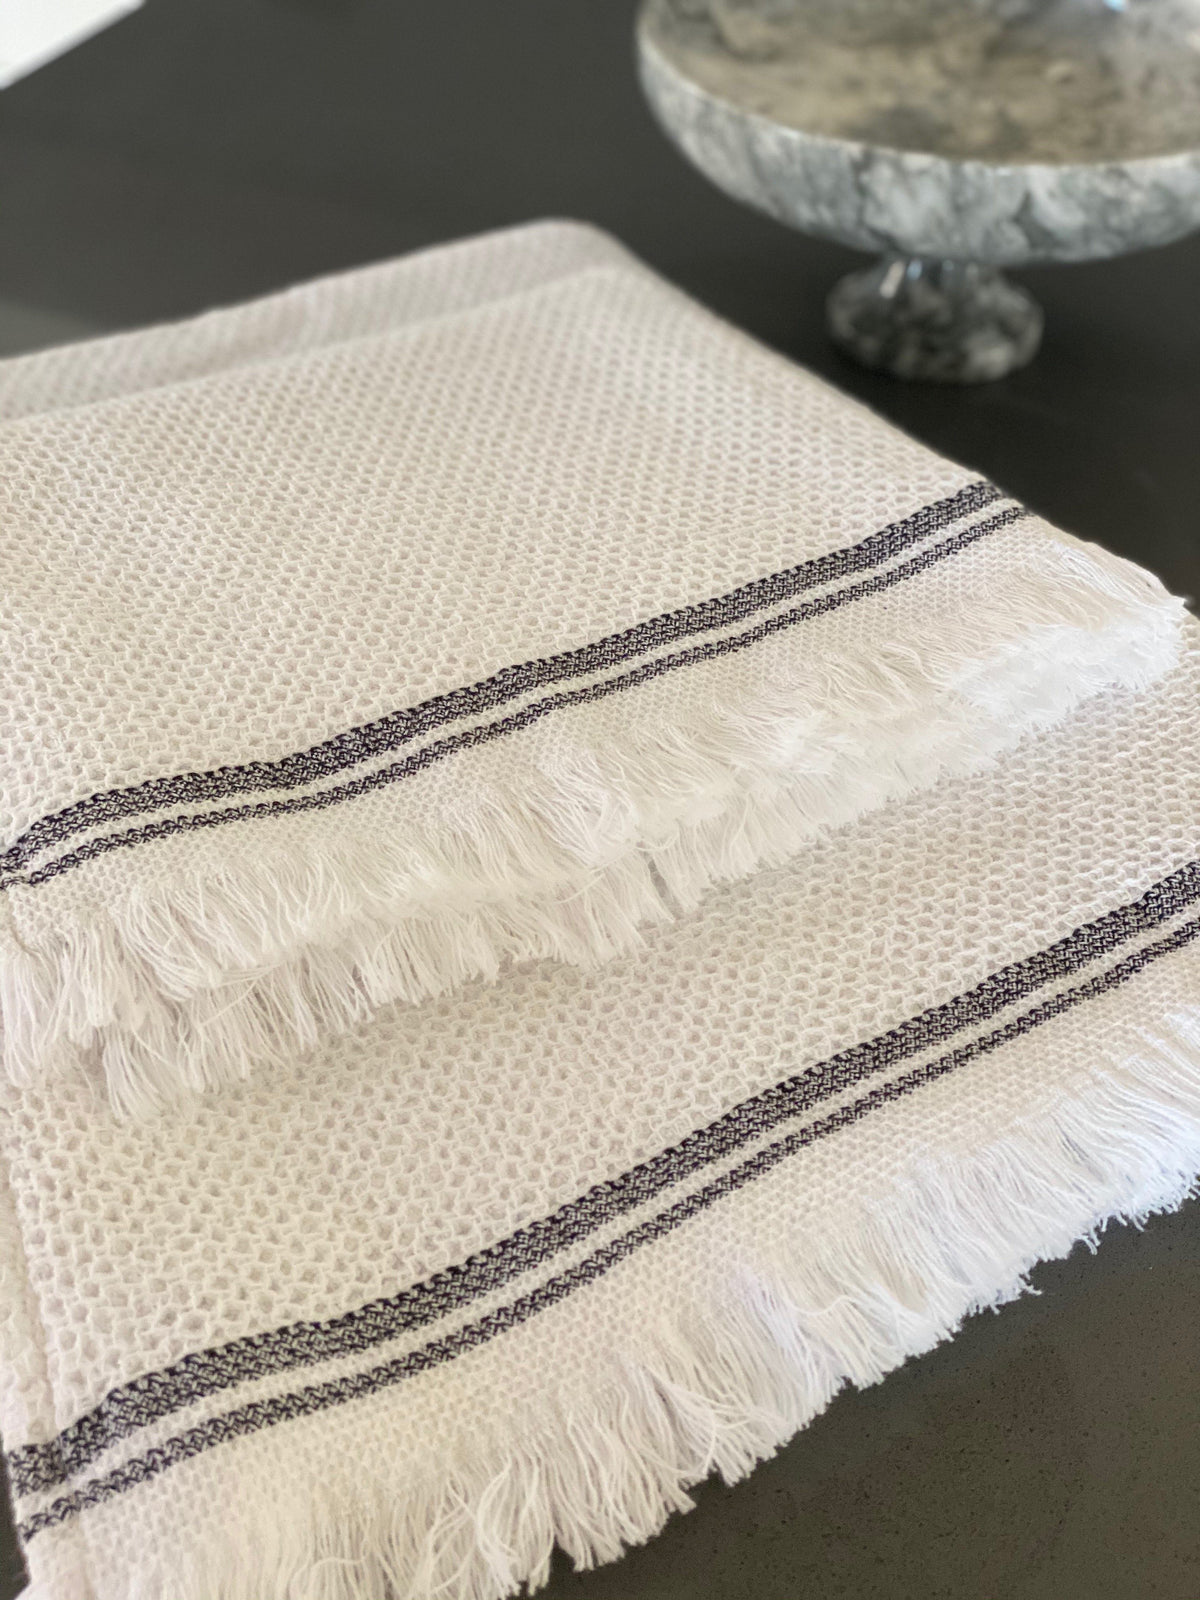 Lush Loom Turkish Hand / Kitchen Towel Bundle